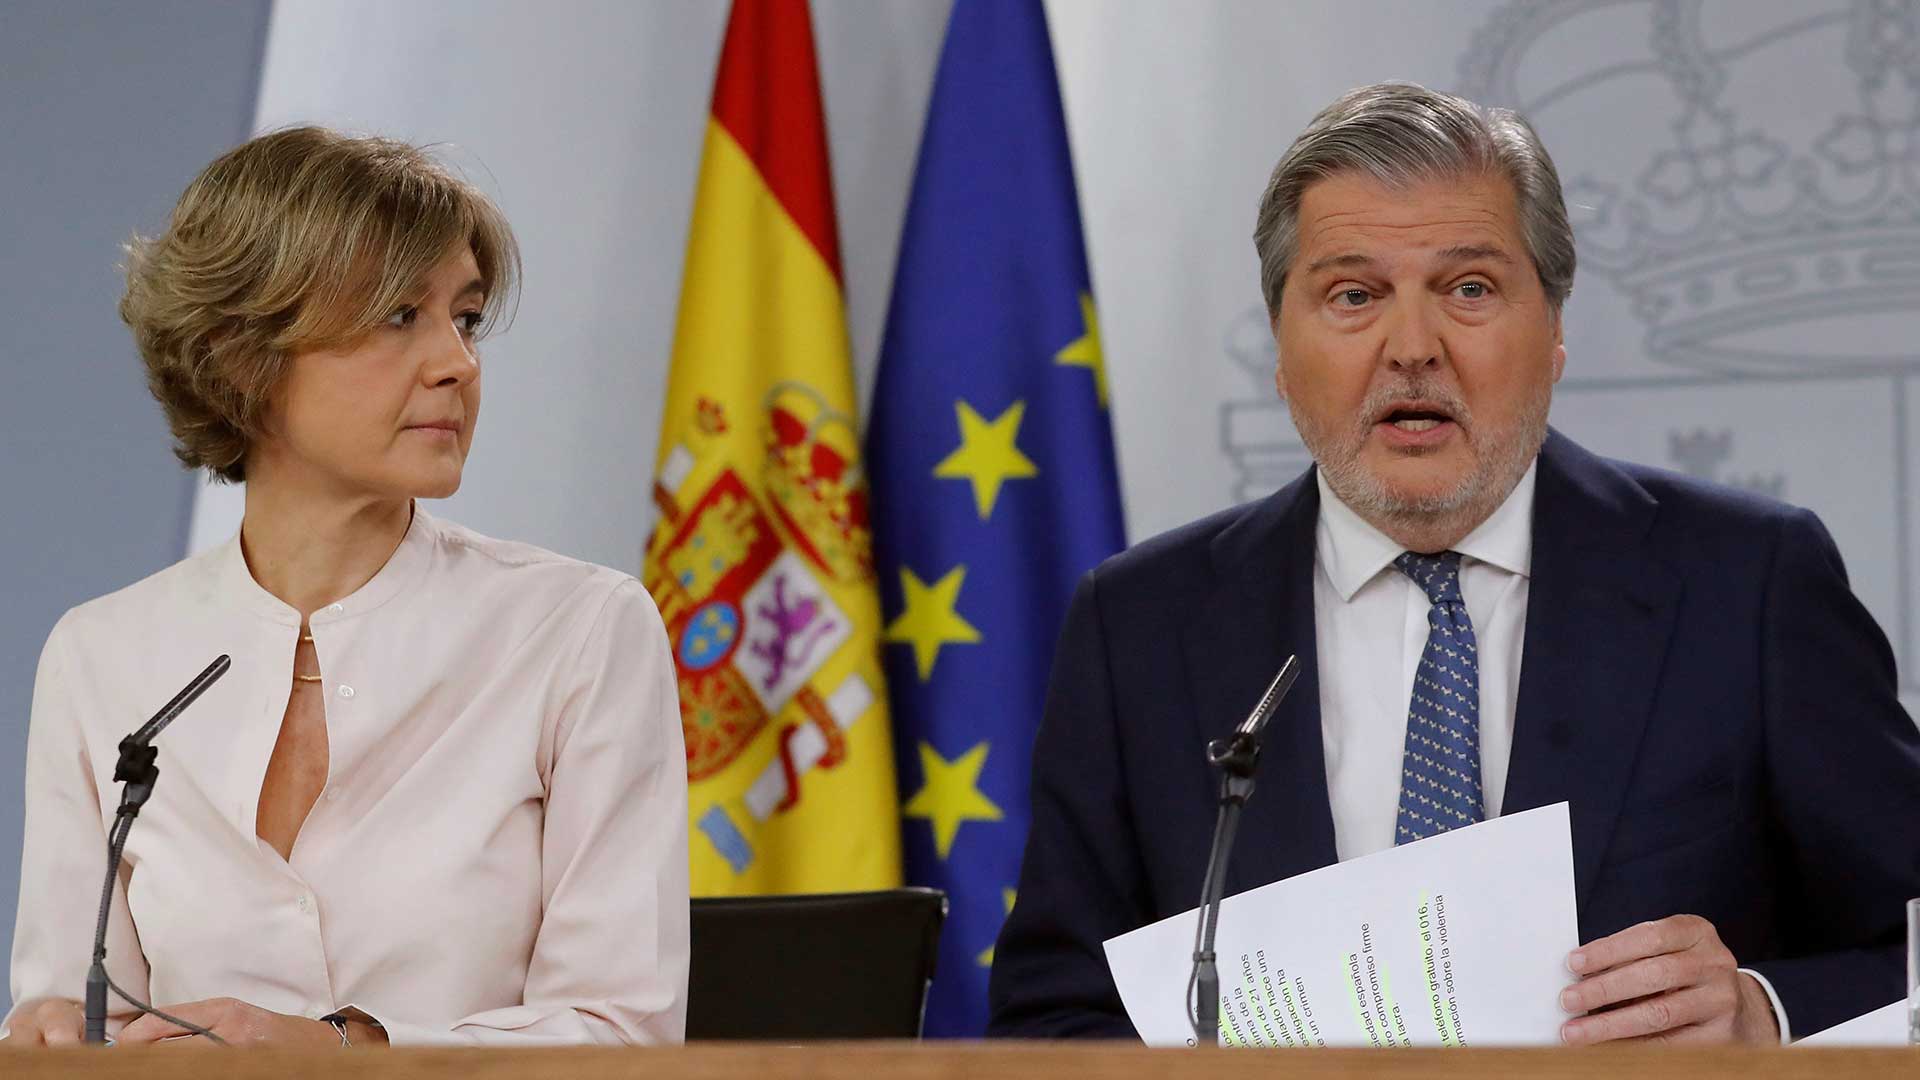 El Gobierno apuesta por un diálogo "productivo" en Cataluña sin imposiciones